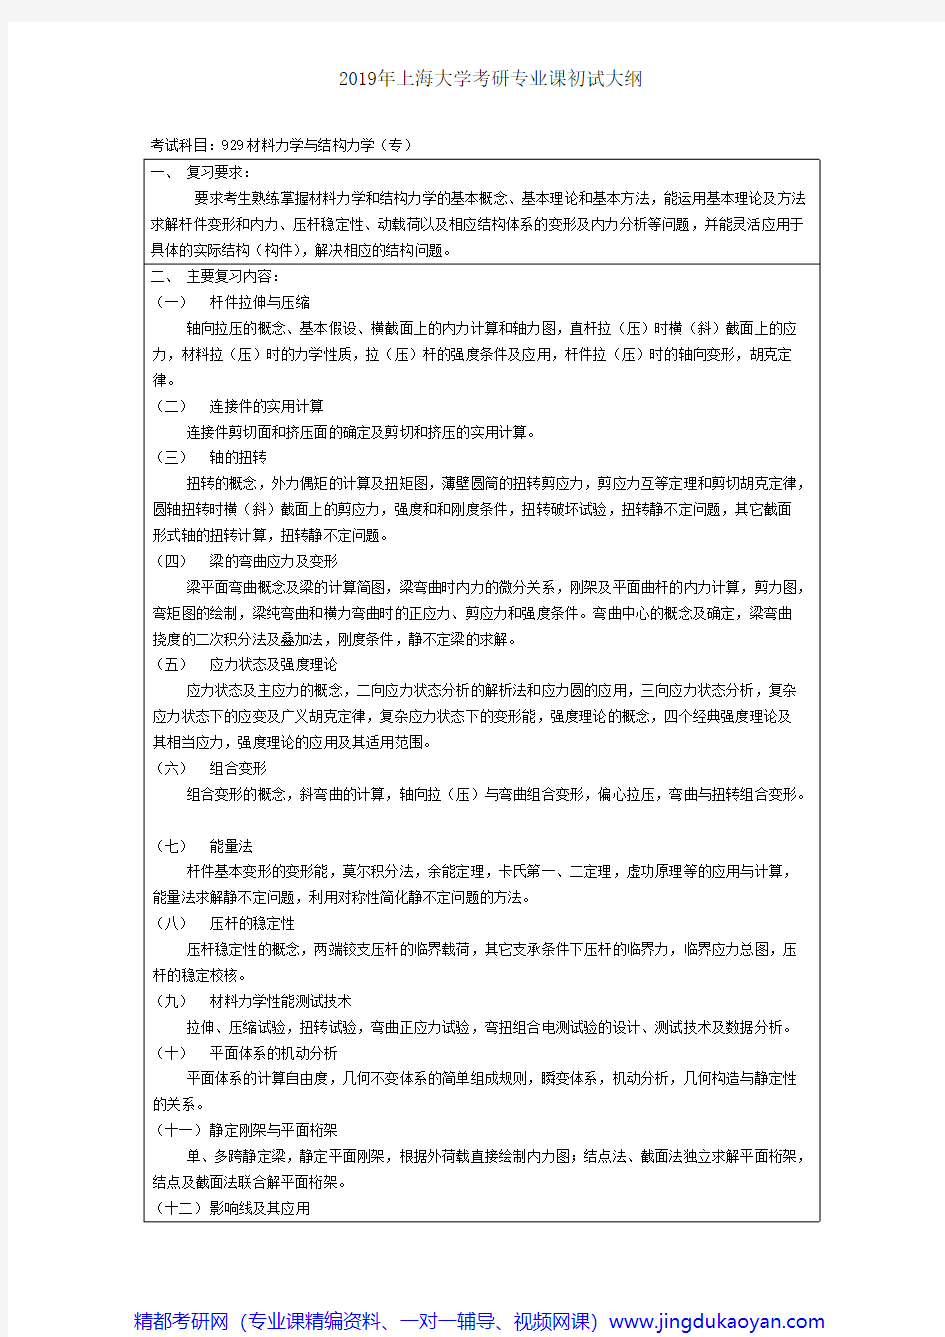 上海大学929材料力学与结构力学(专)2018年考研专业课大纲